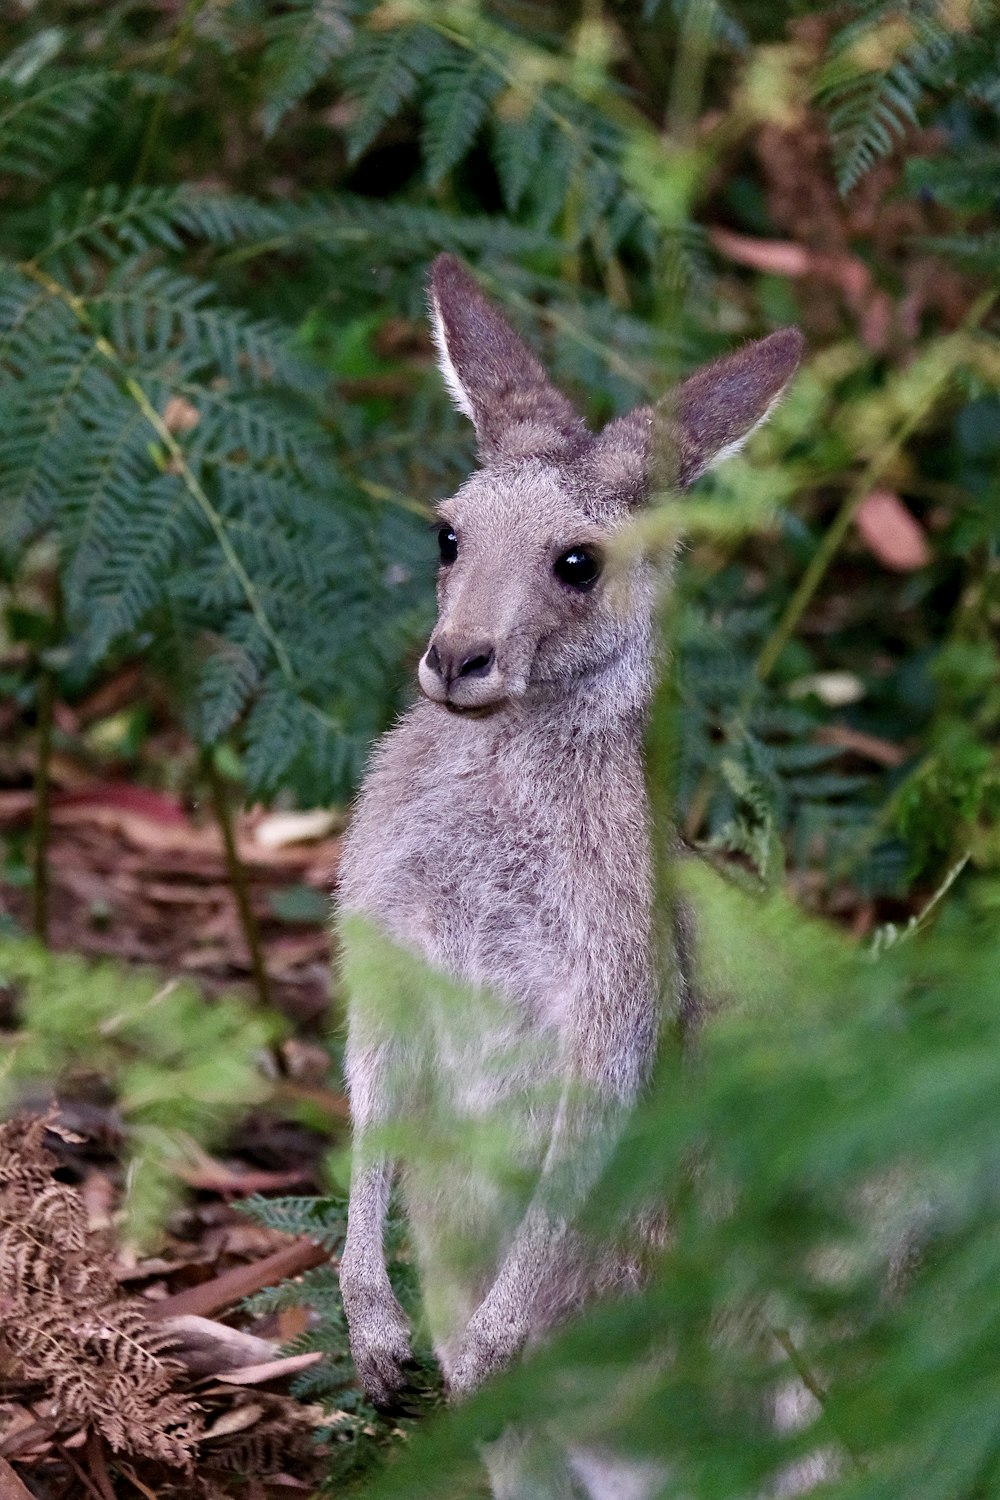 gray kangaroo on green grass during daytime